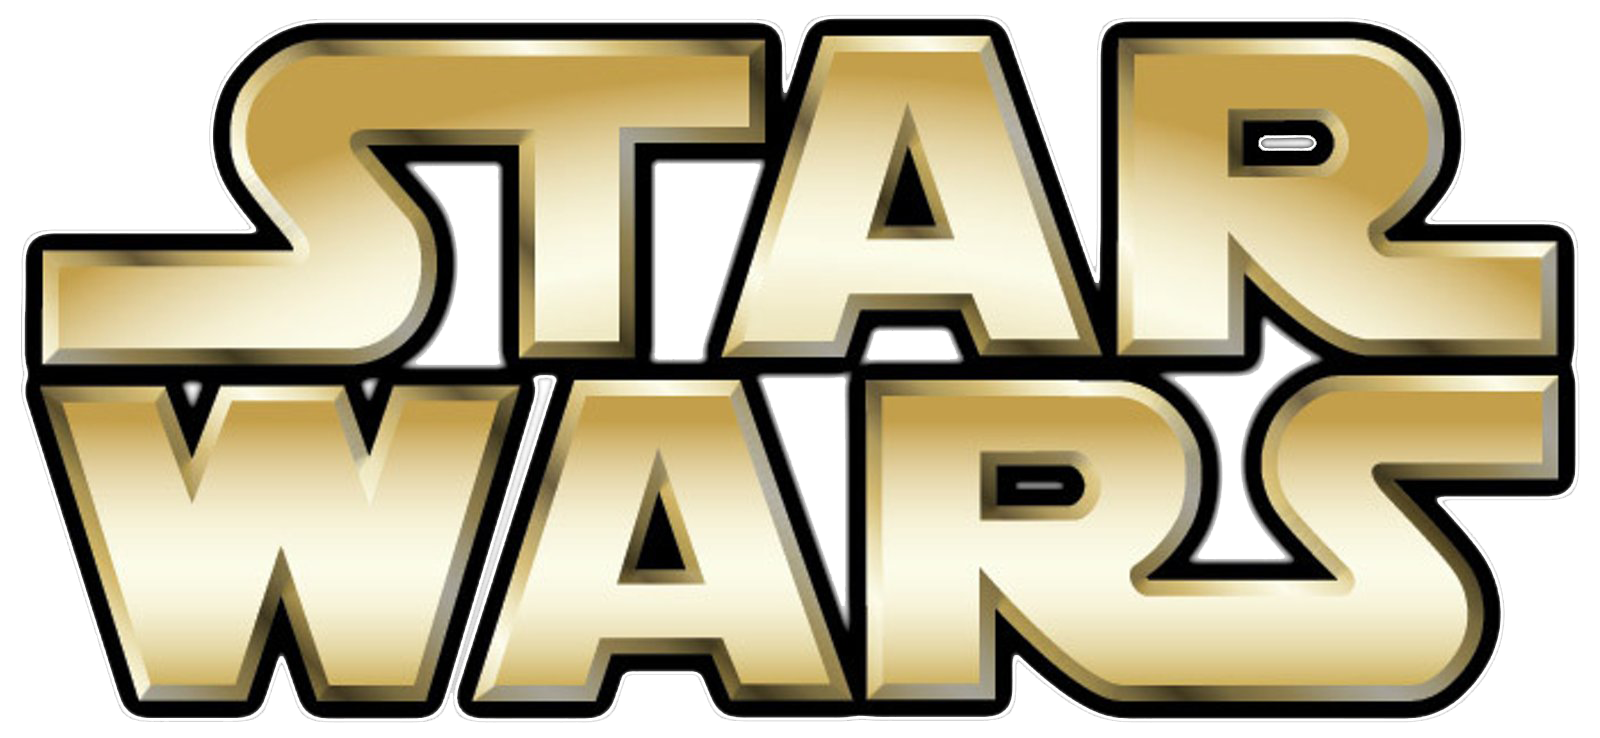 Star-Wars-Logo.png